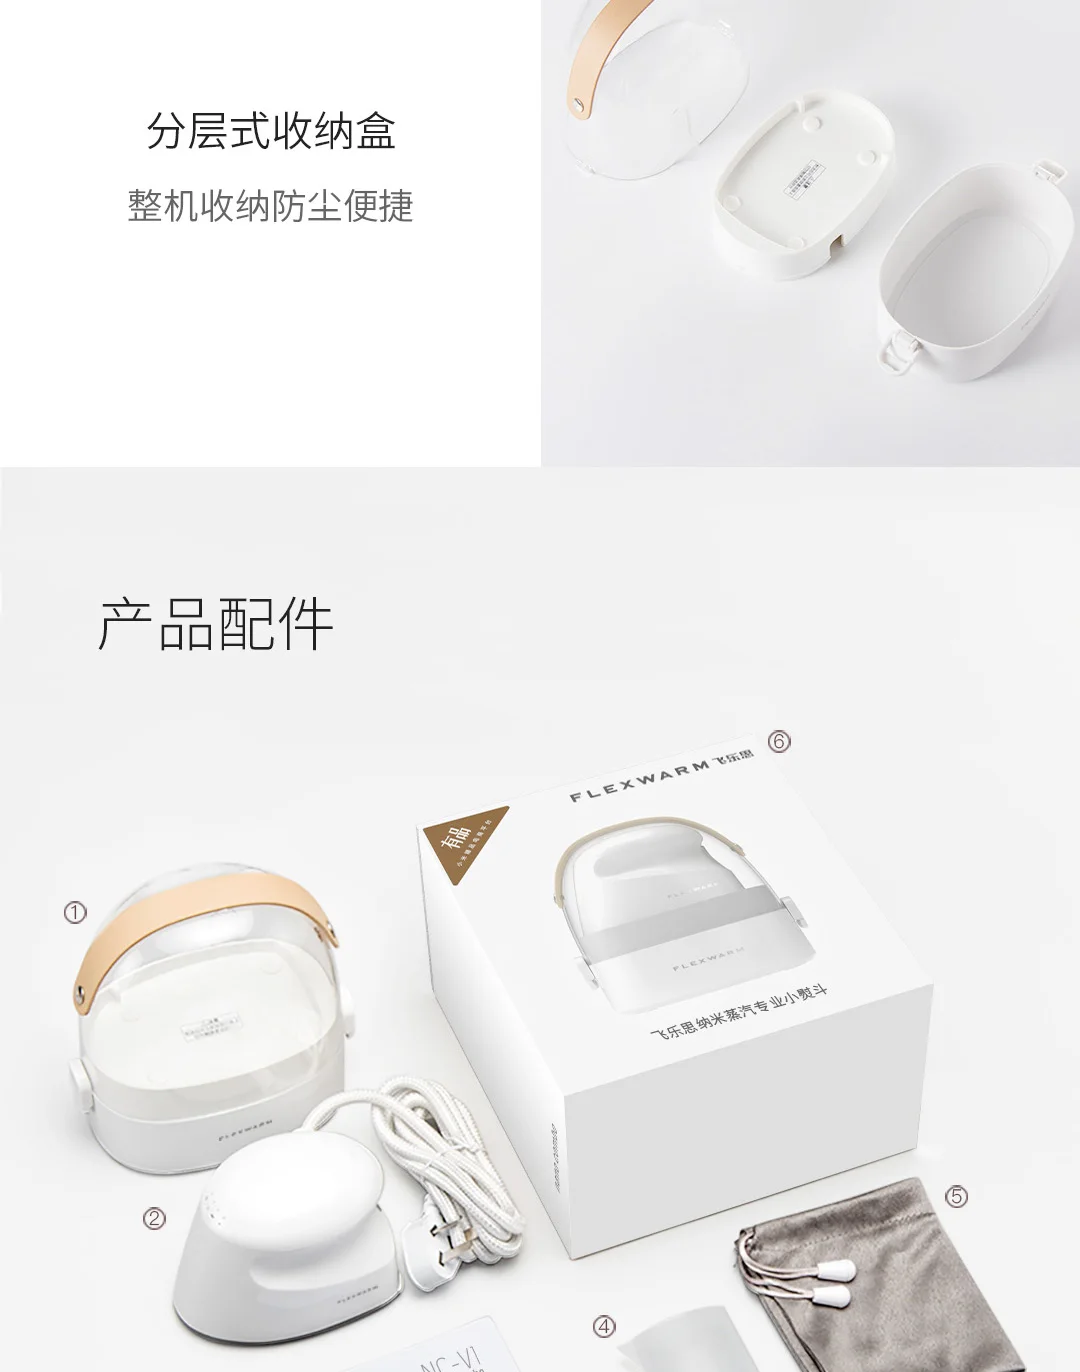 Xiaomi нано-пар профессиональный Утюг профессиональный утюг нано-Паровая Глажка одежды для сухой и влажной уборки, хит, 4-регулировка скорости